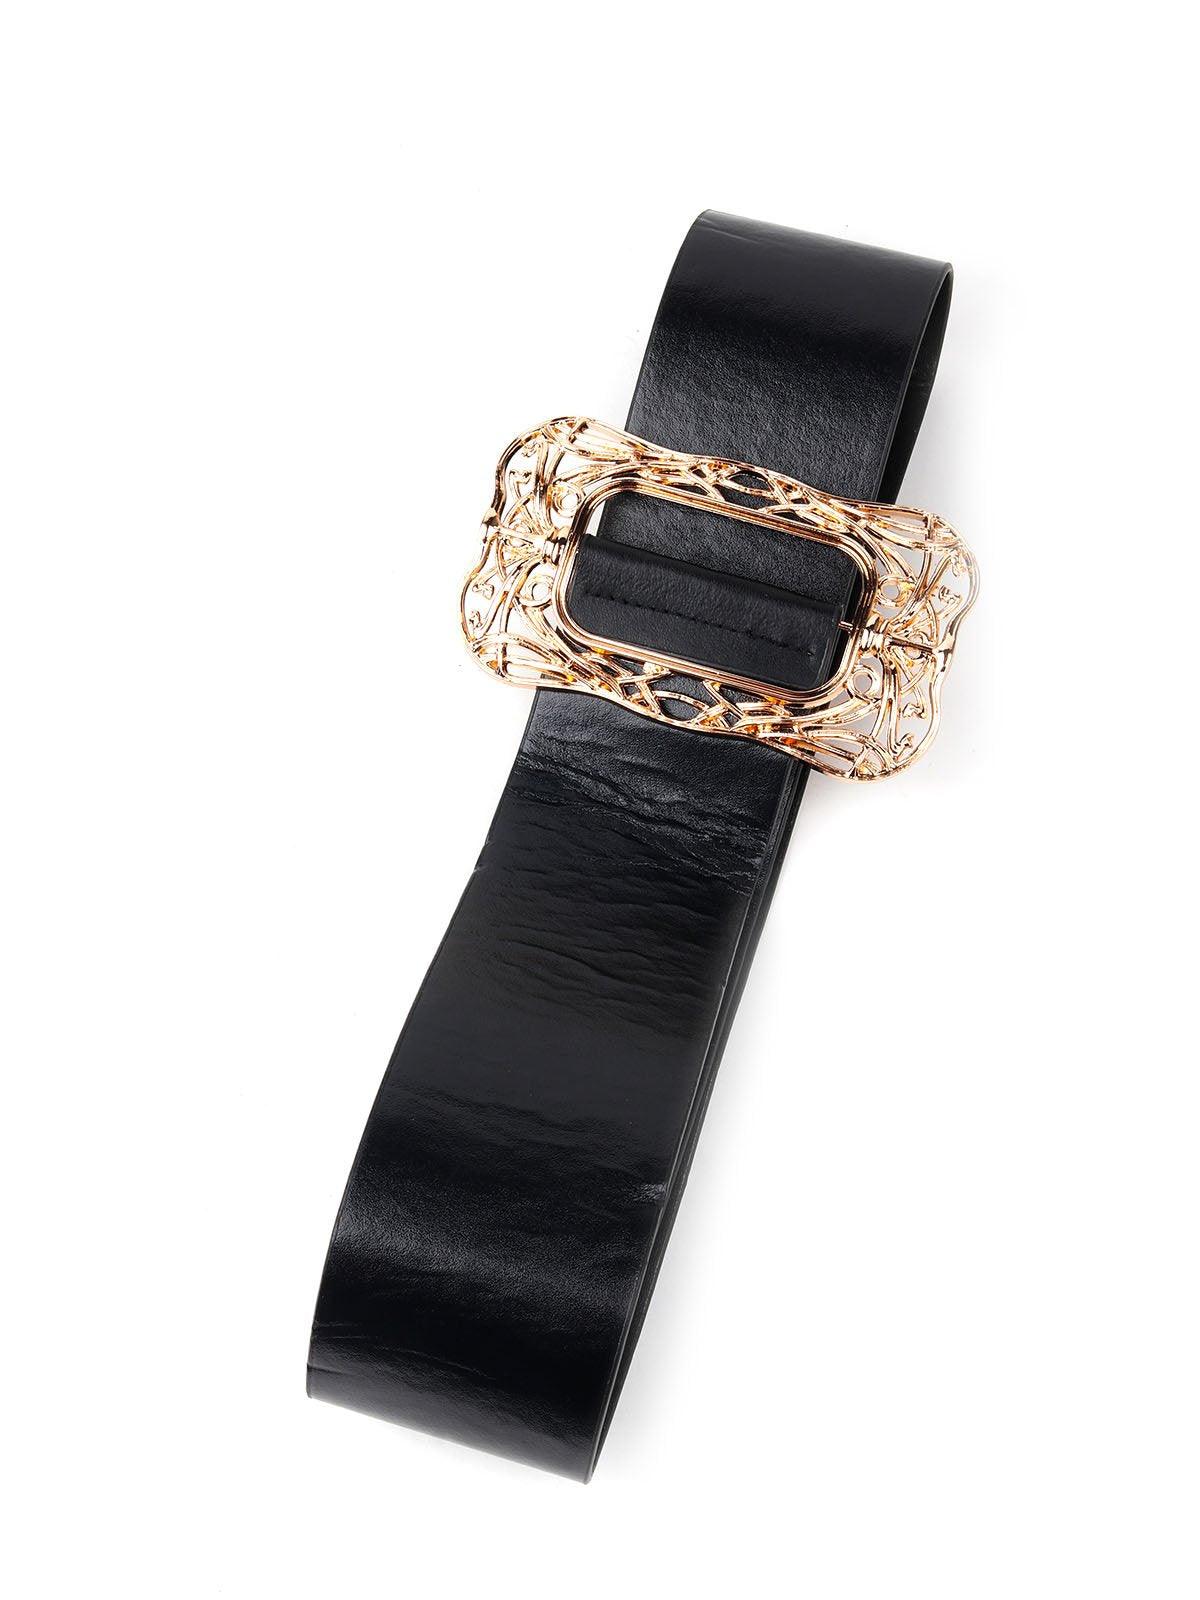 Black Leather Belt With Golden Metal Buckle - Odette